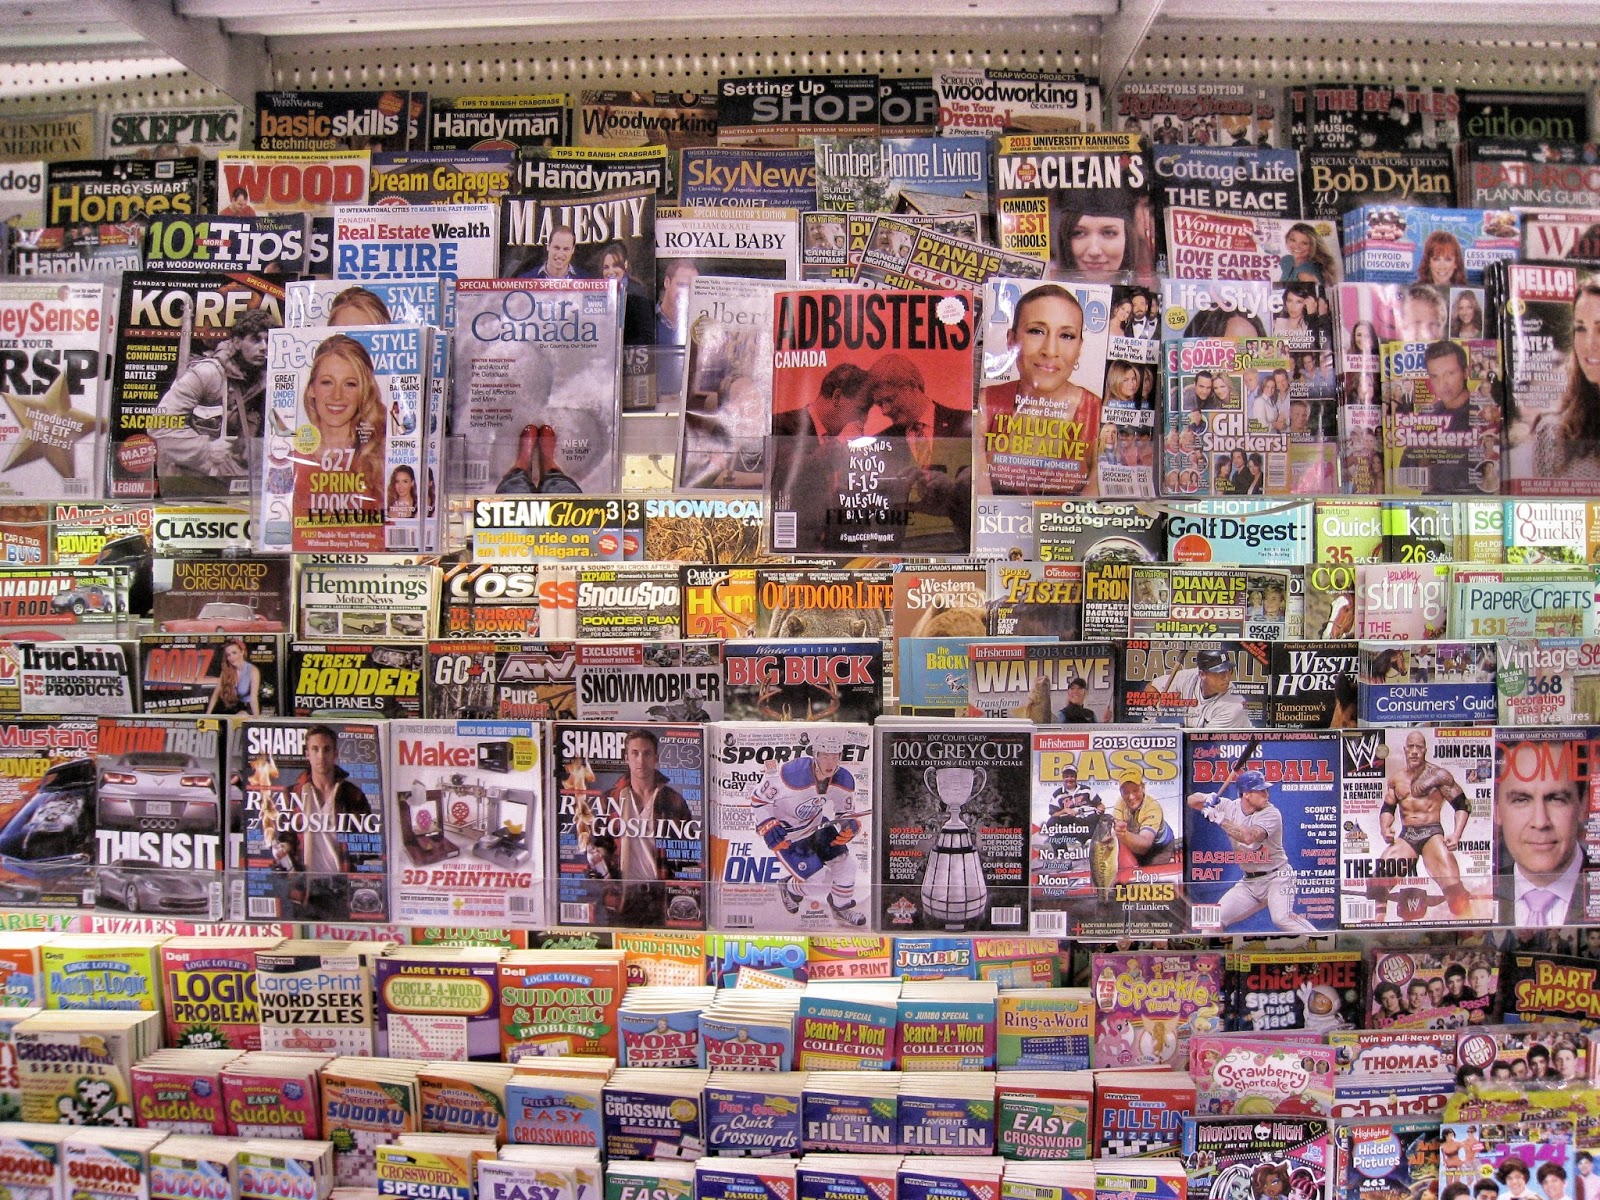 David Steinlicht Magazine Rack In A Canadian Grocery Store